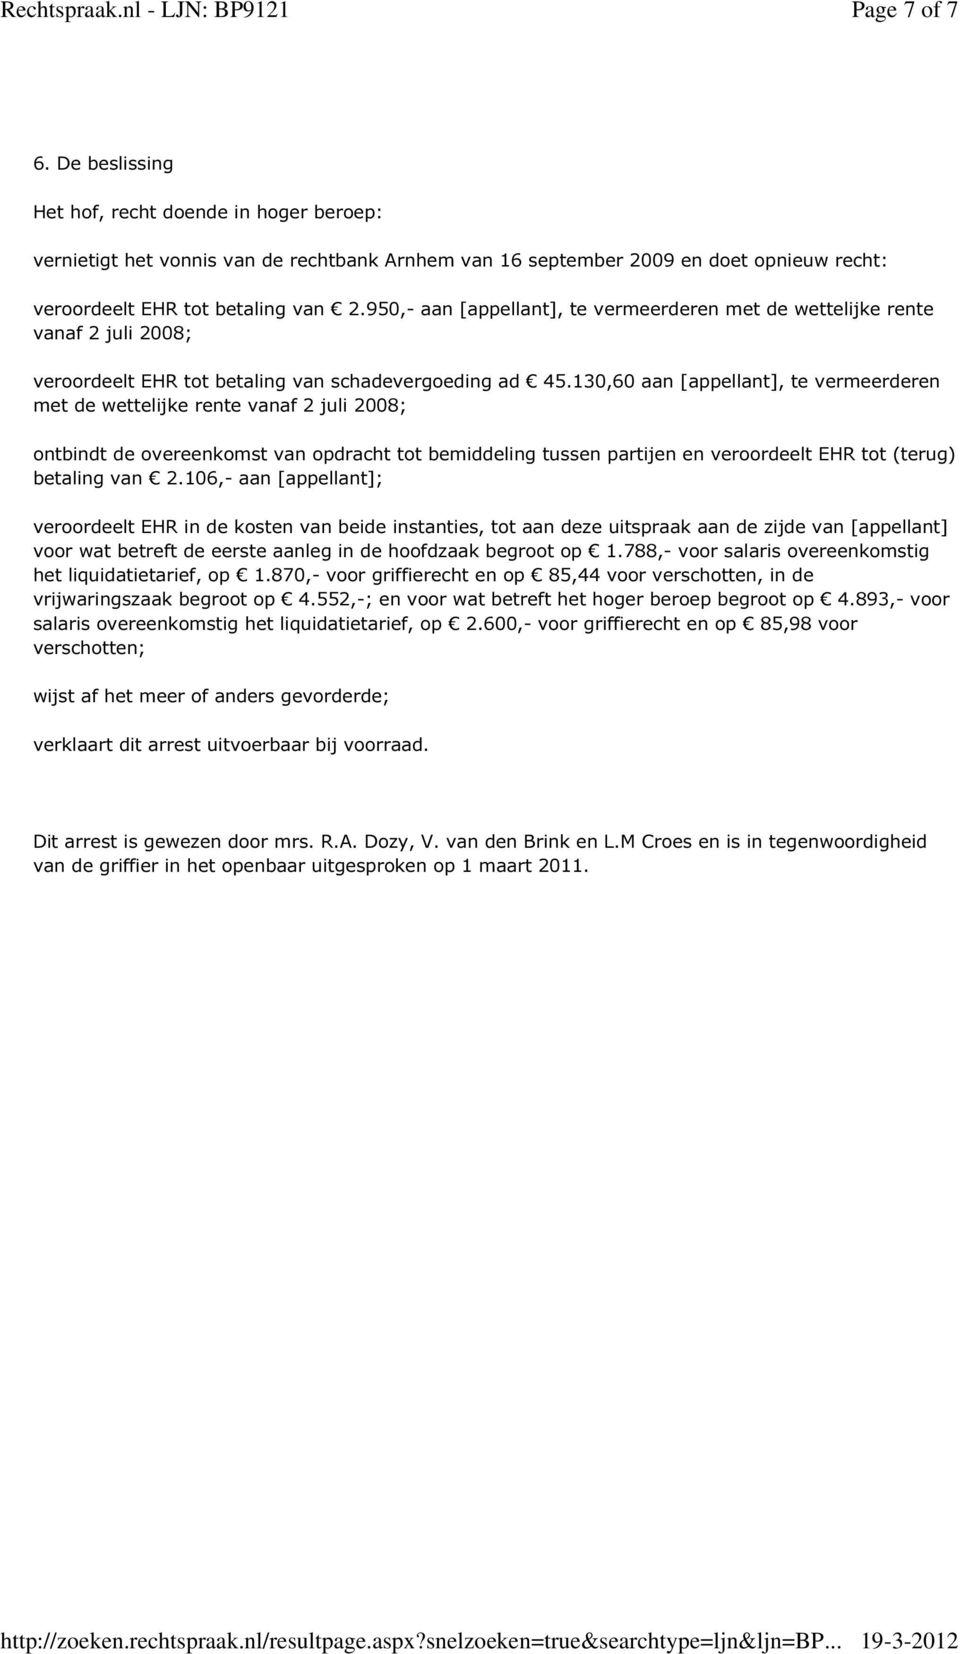 130,60 aan [appellant], te vermeerderen met de wettelijke rente vanaf 2 juli 2008; ontbindt de overeenkomst van opdracht tot bemiddeling tussen partijen en veroordeelt EHR tot (terug) betaling van 2.